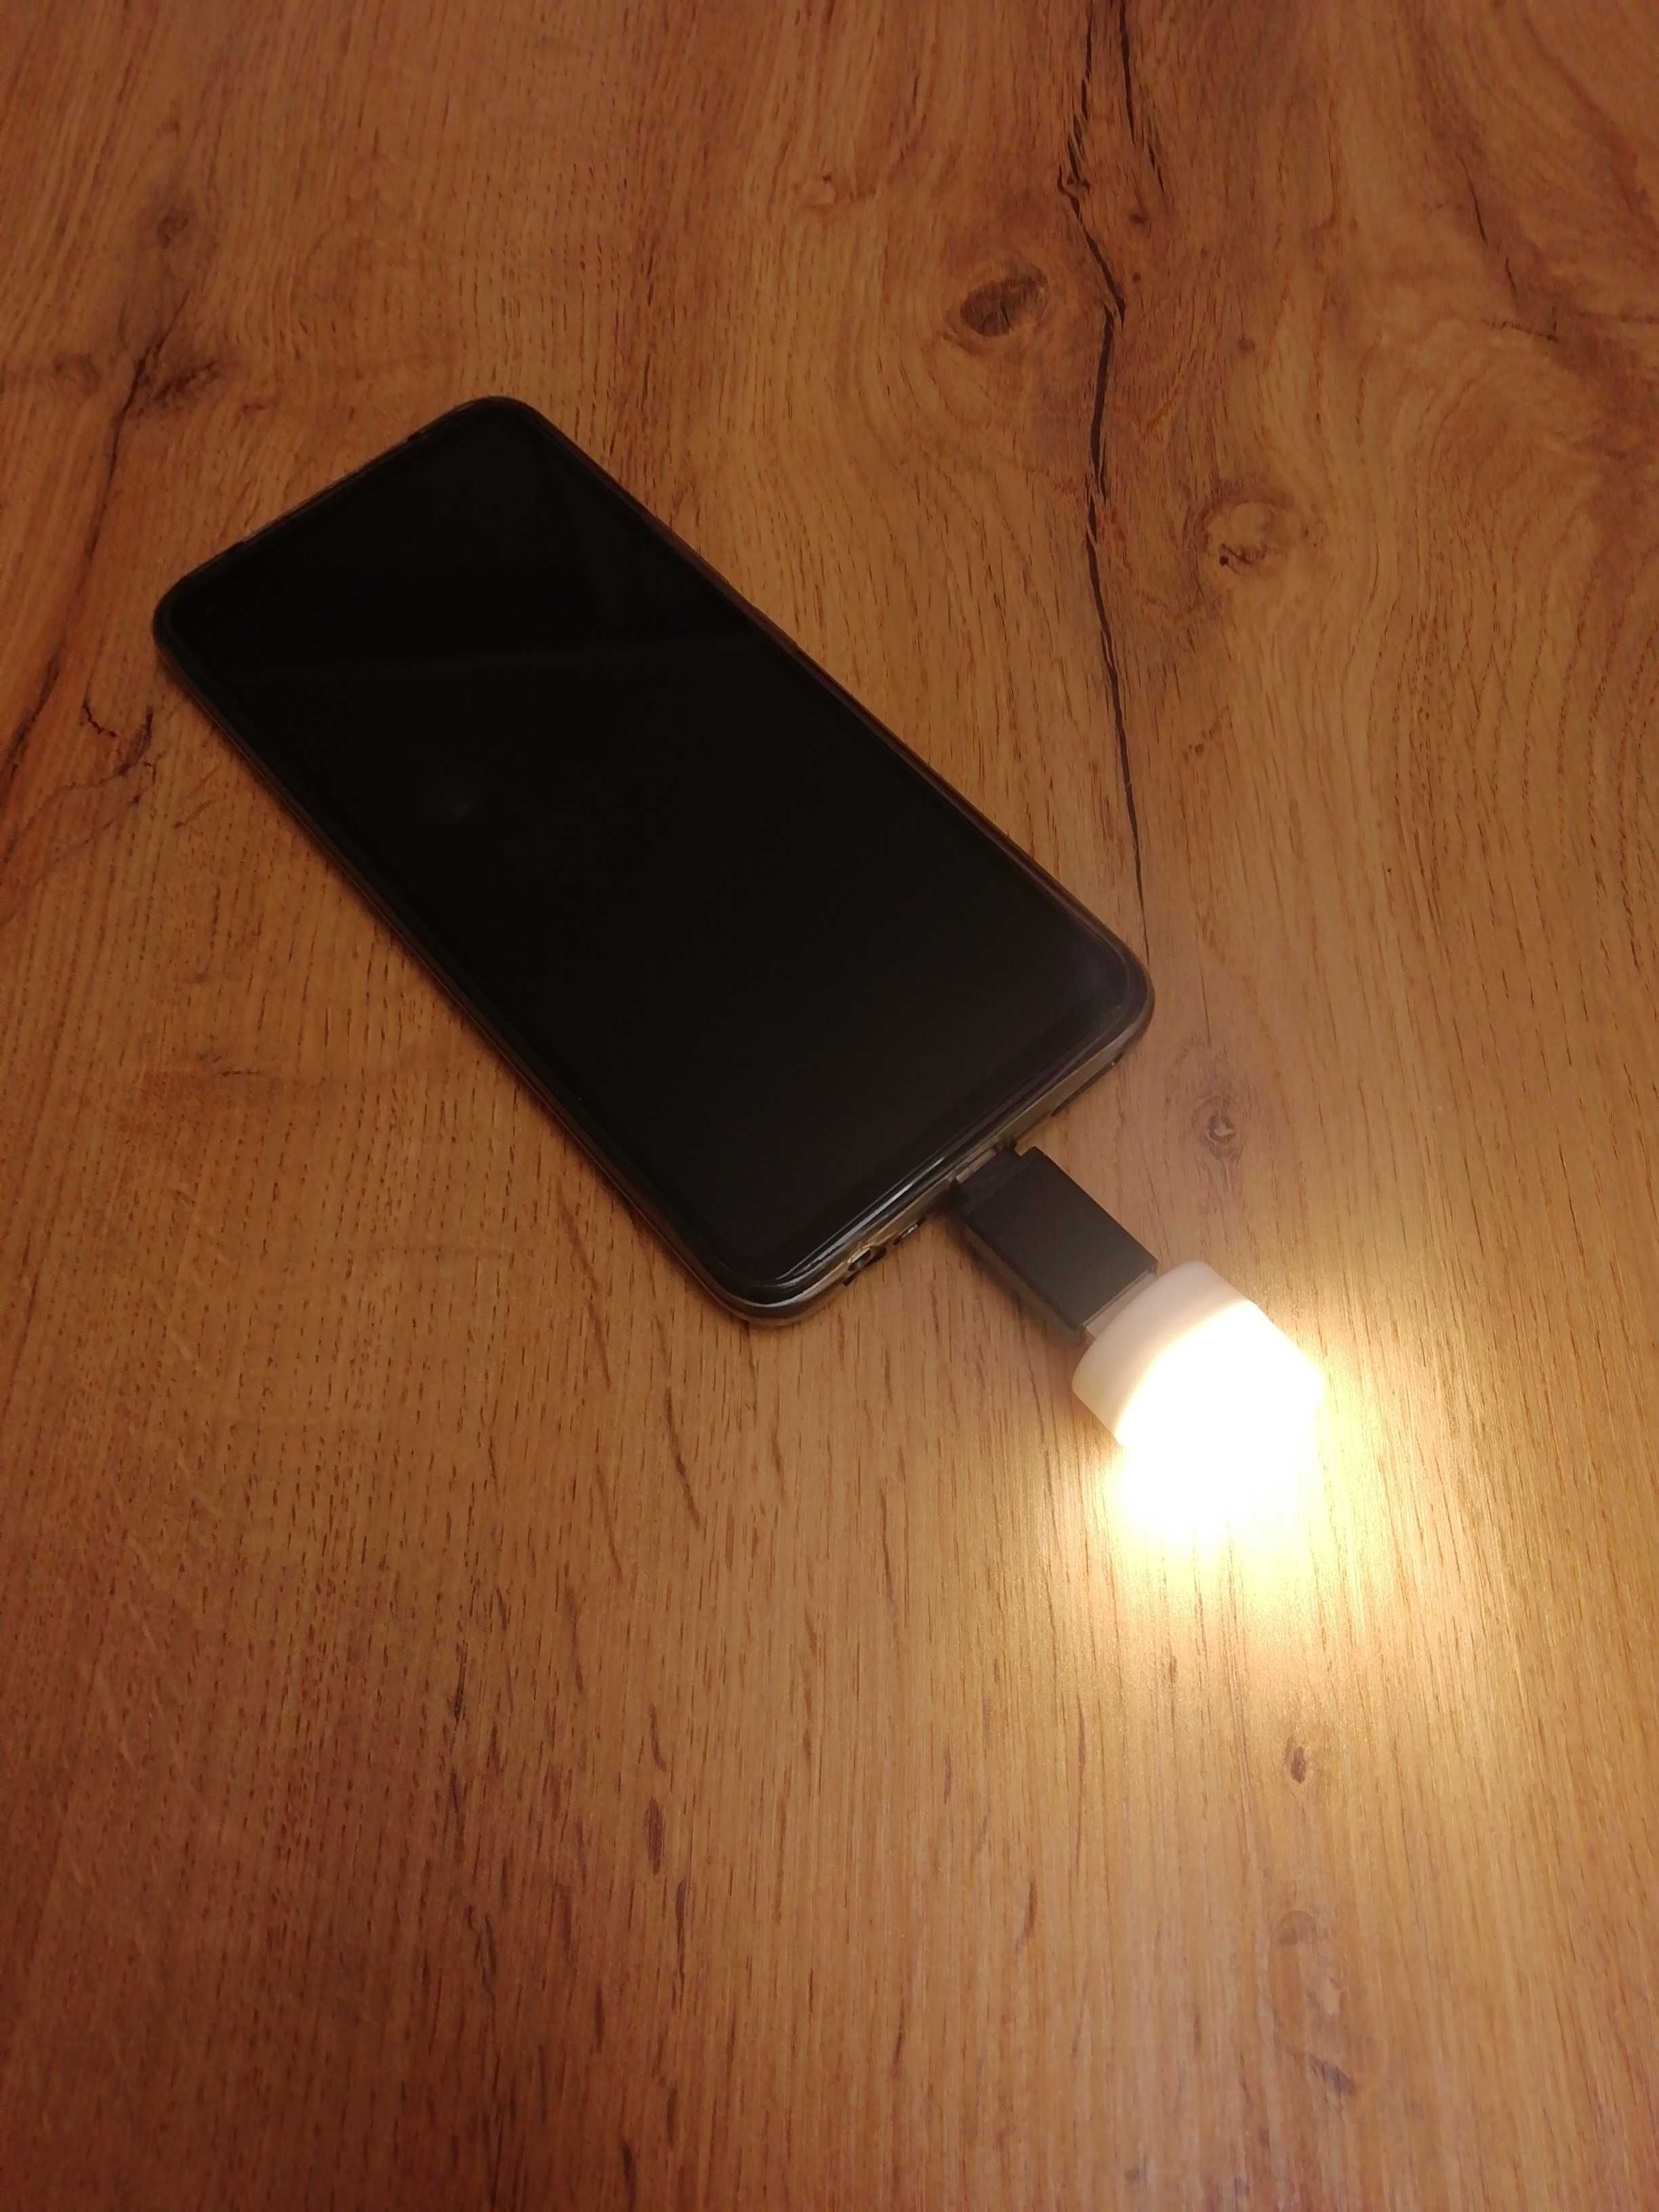 USB лампочка, юсб ліхтарик від повербанка, автономне світло